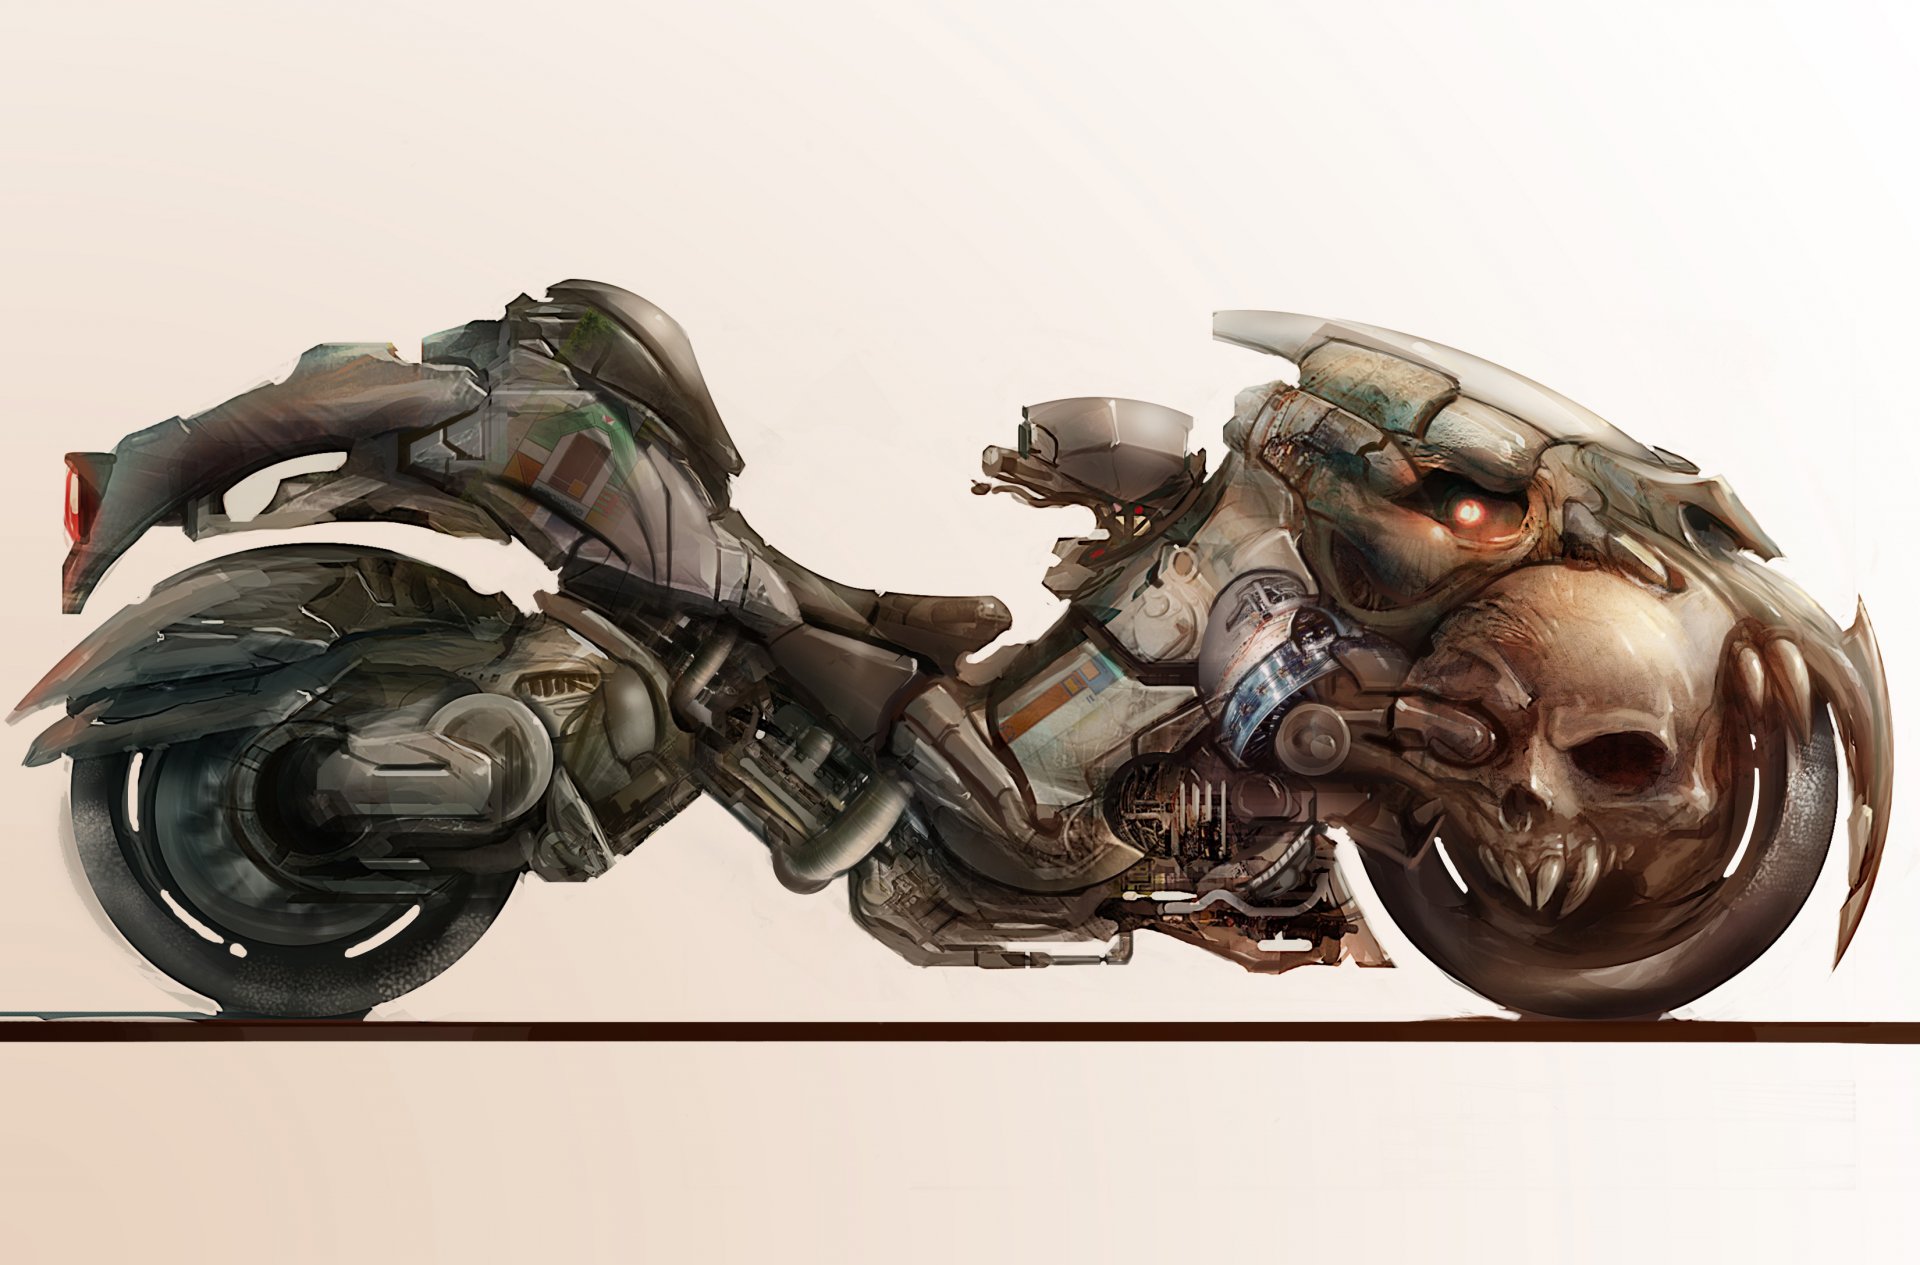 Cyberpunk motorcycle art фото 113